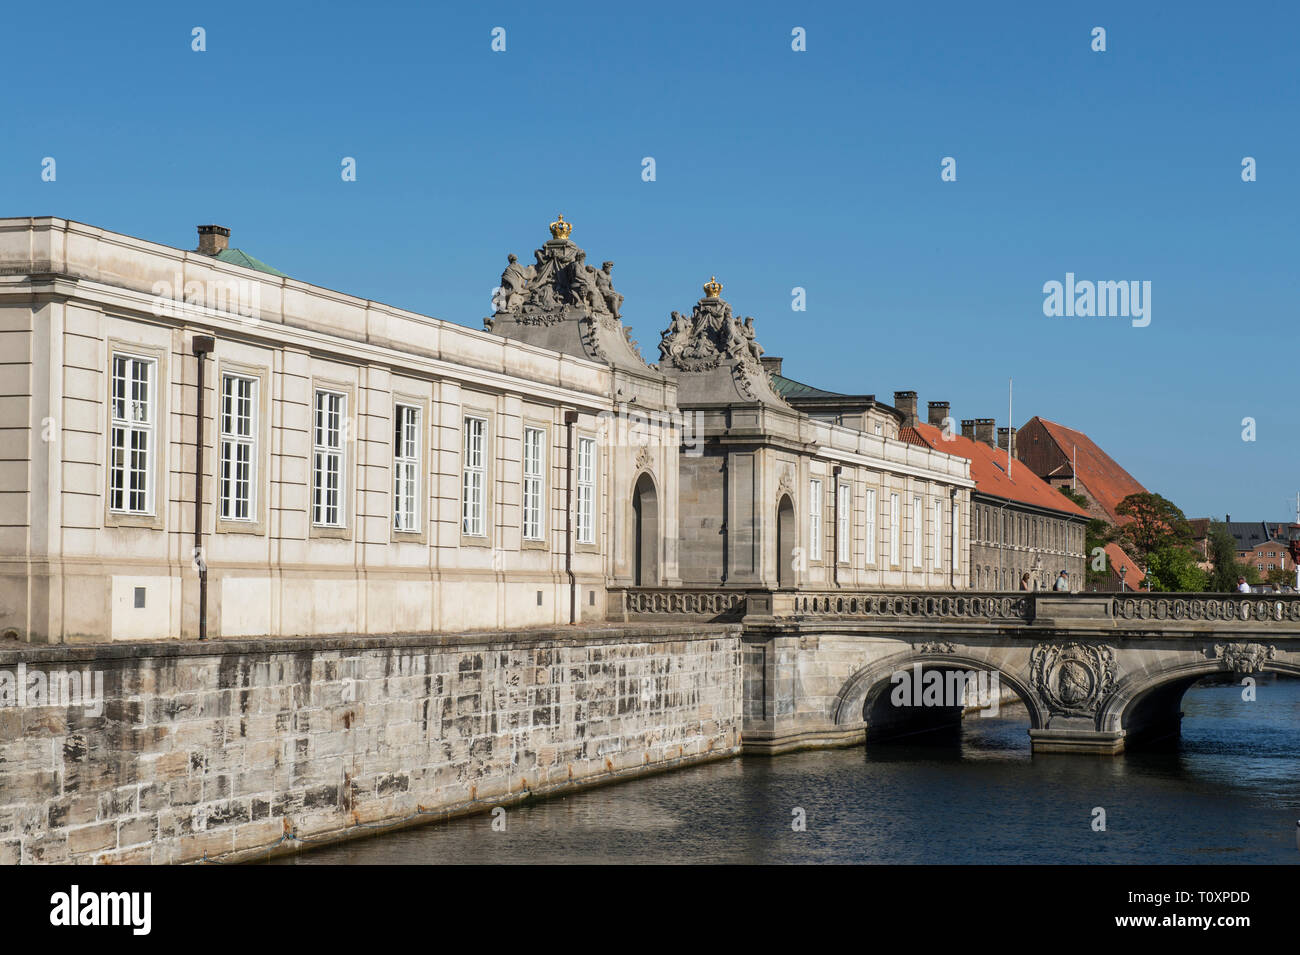 Danemark, copenhague, Christiansborg Palace Banque D'Images